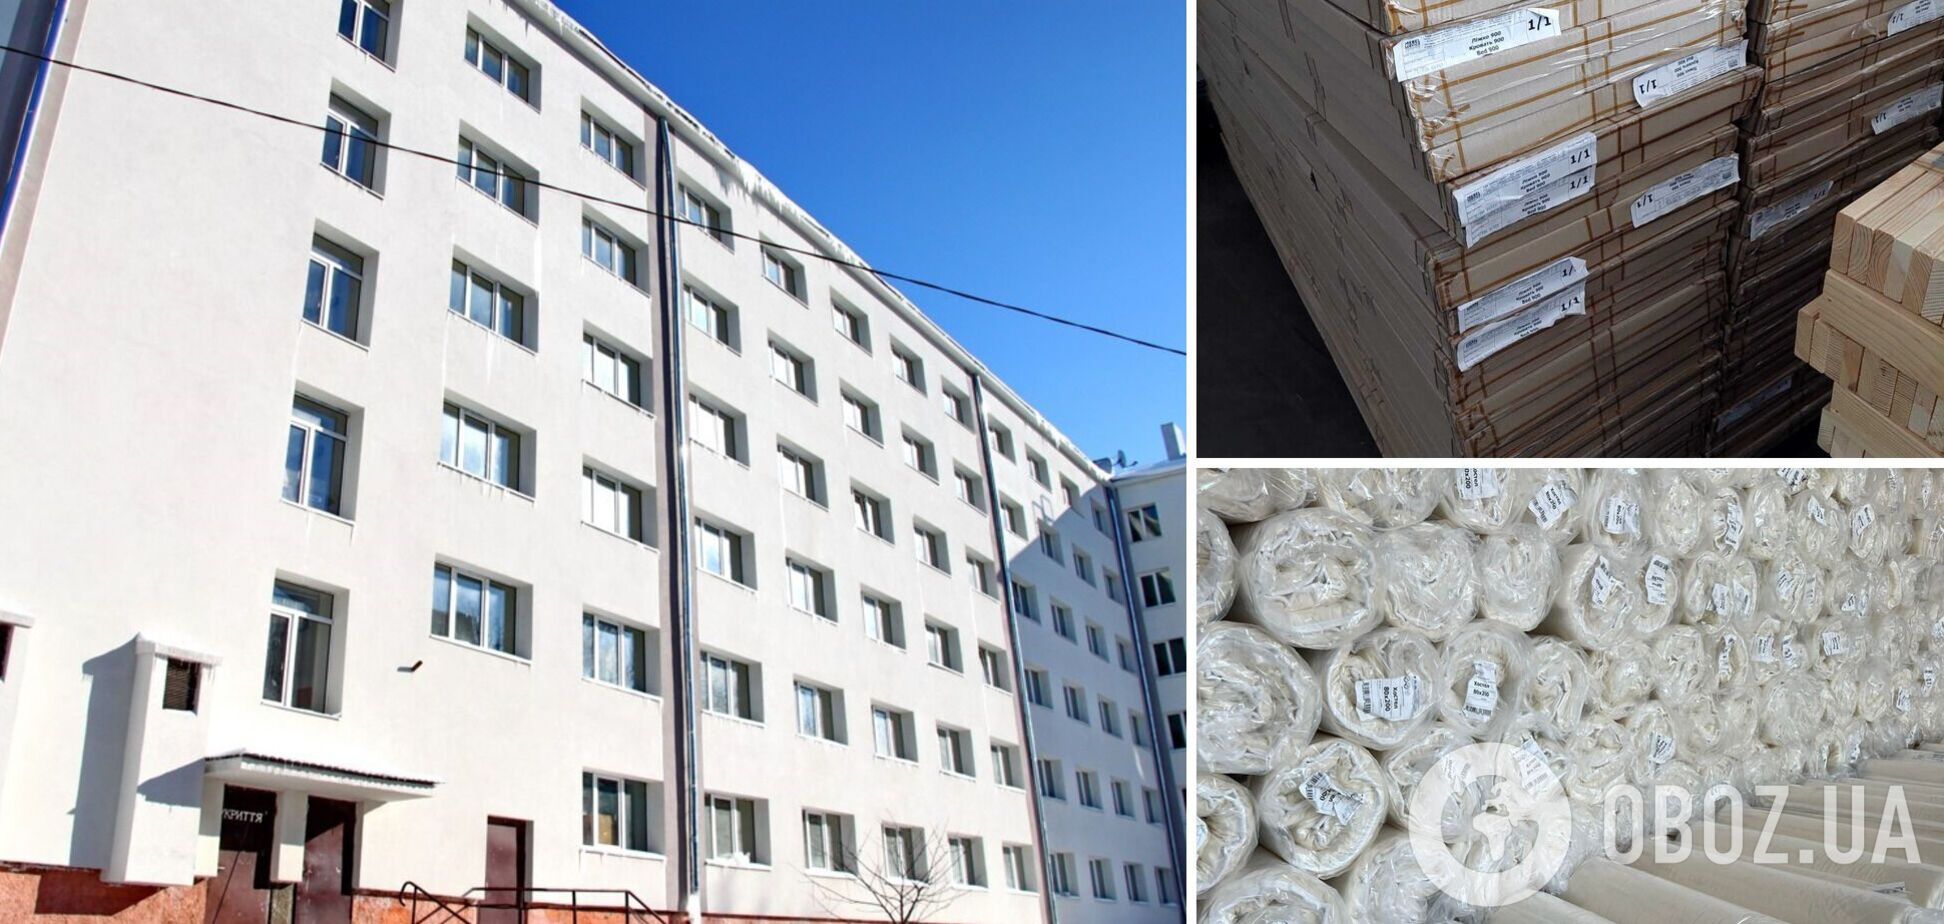 Во Львовской области отремонтируют 11 общежитий для проживания переселенцев